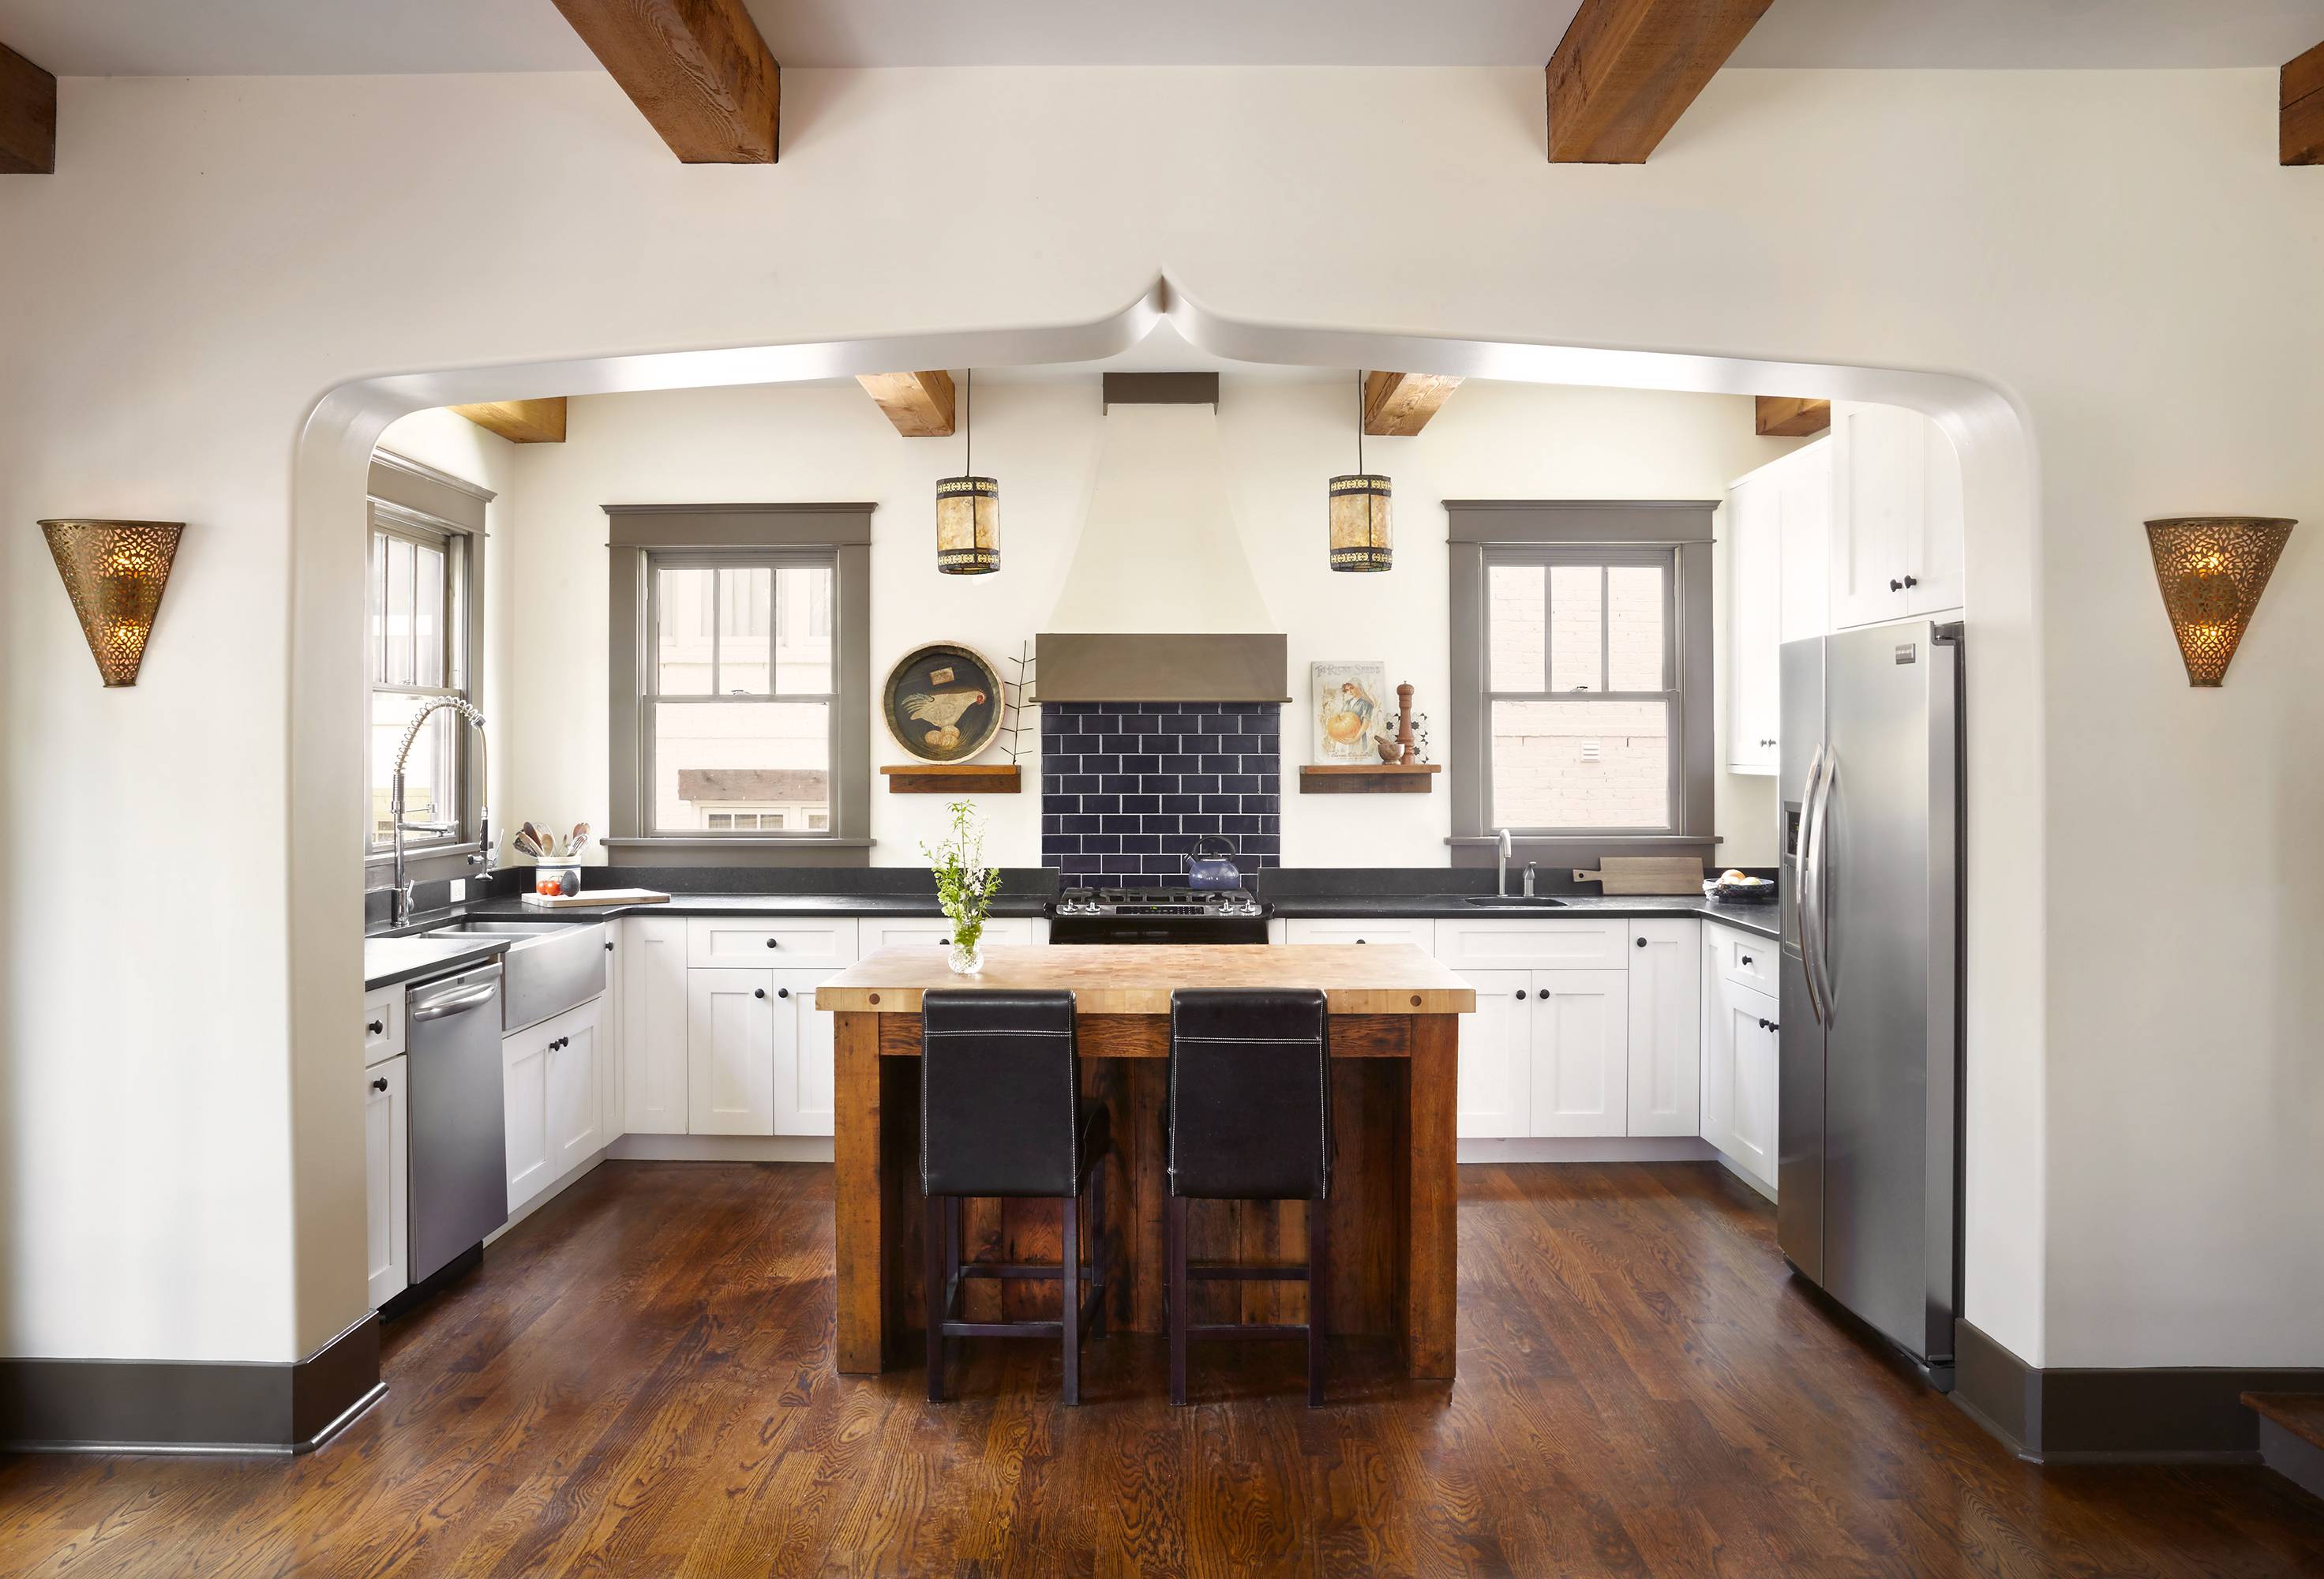 Кухня в частном доме - как оформить дизайн с умом? топ-100 фото лучших решений для частного дома